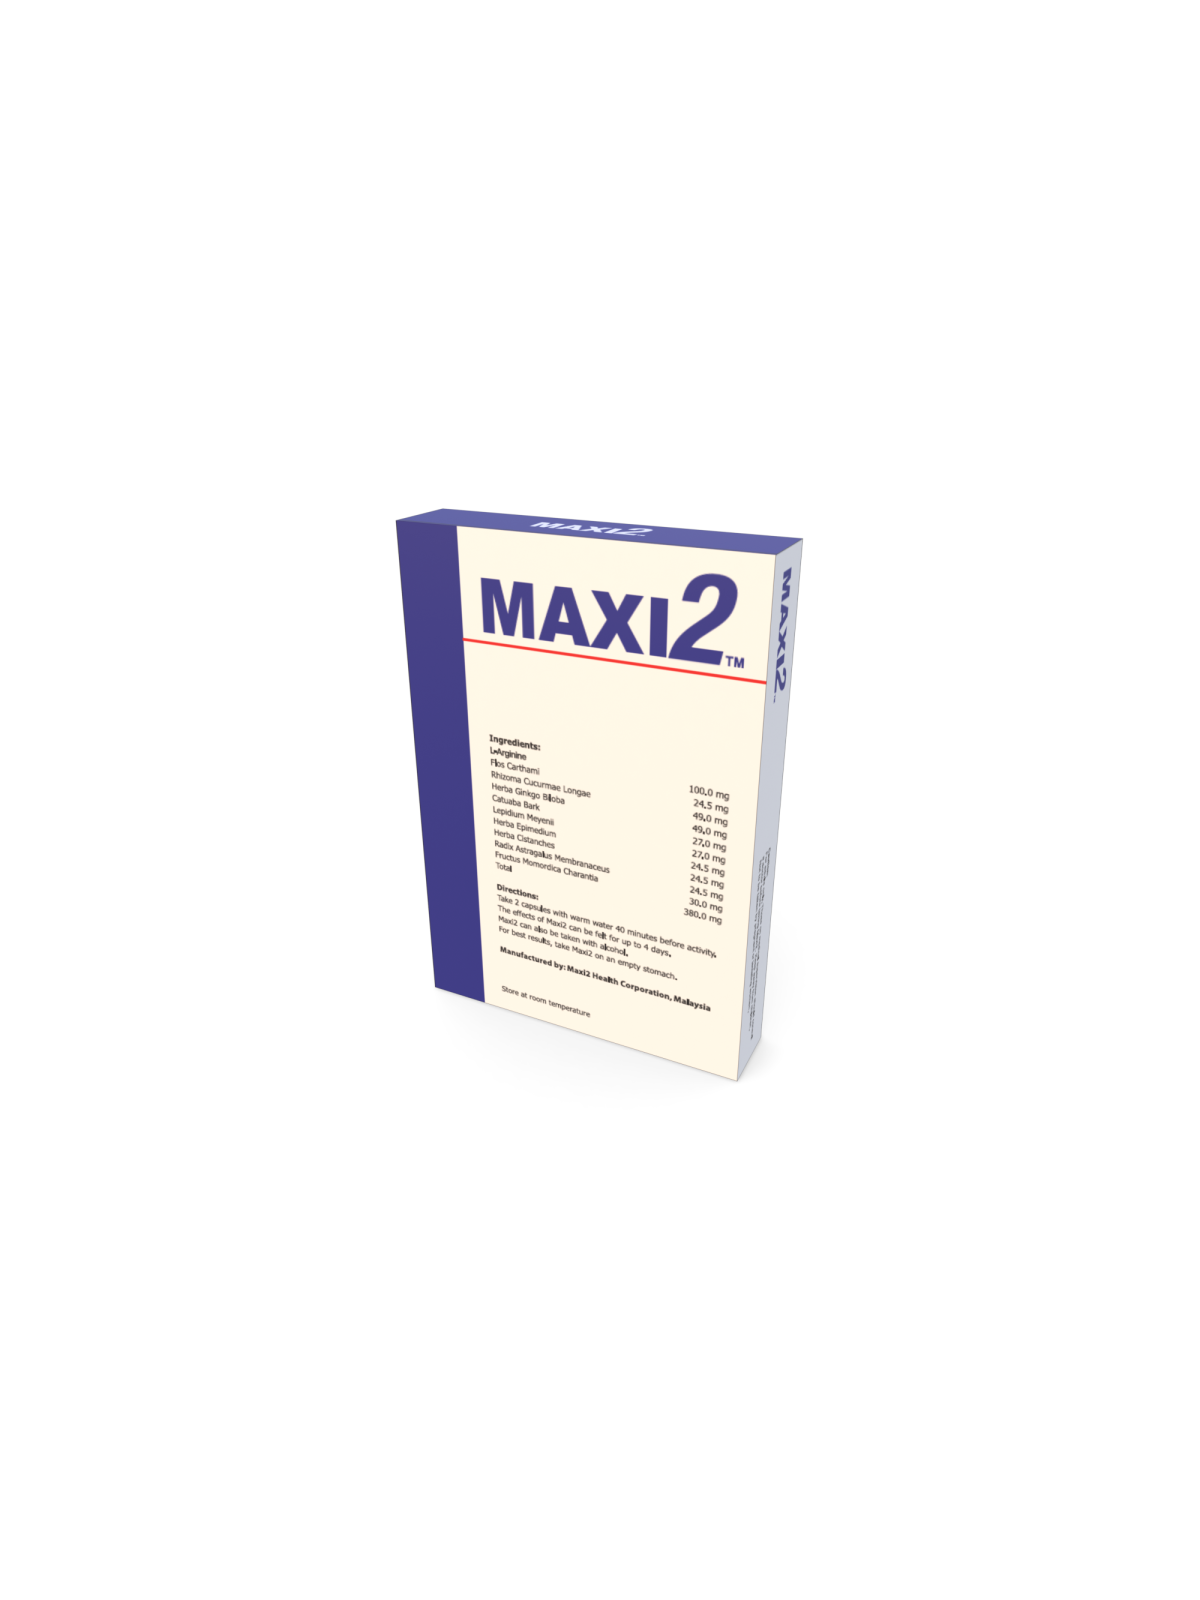 Maxi2 Pills - Male Enhancement